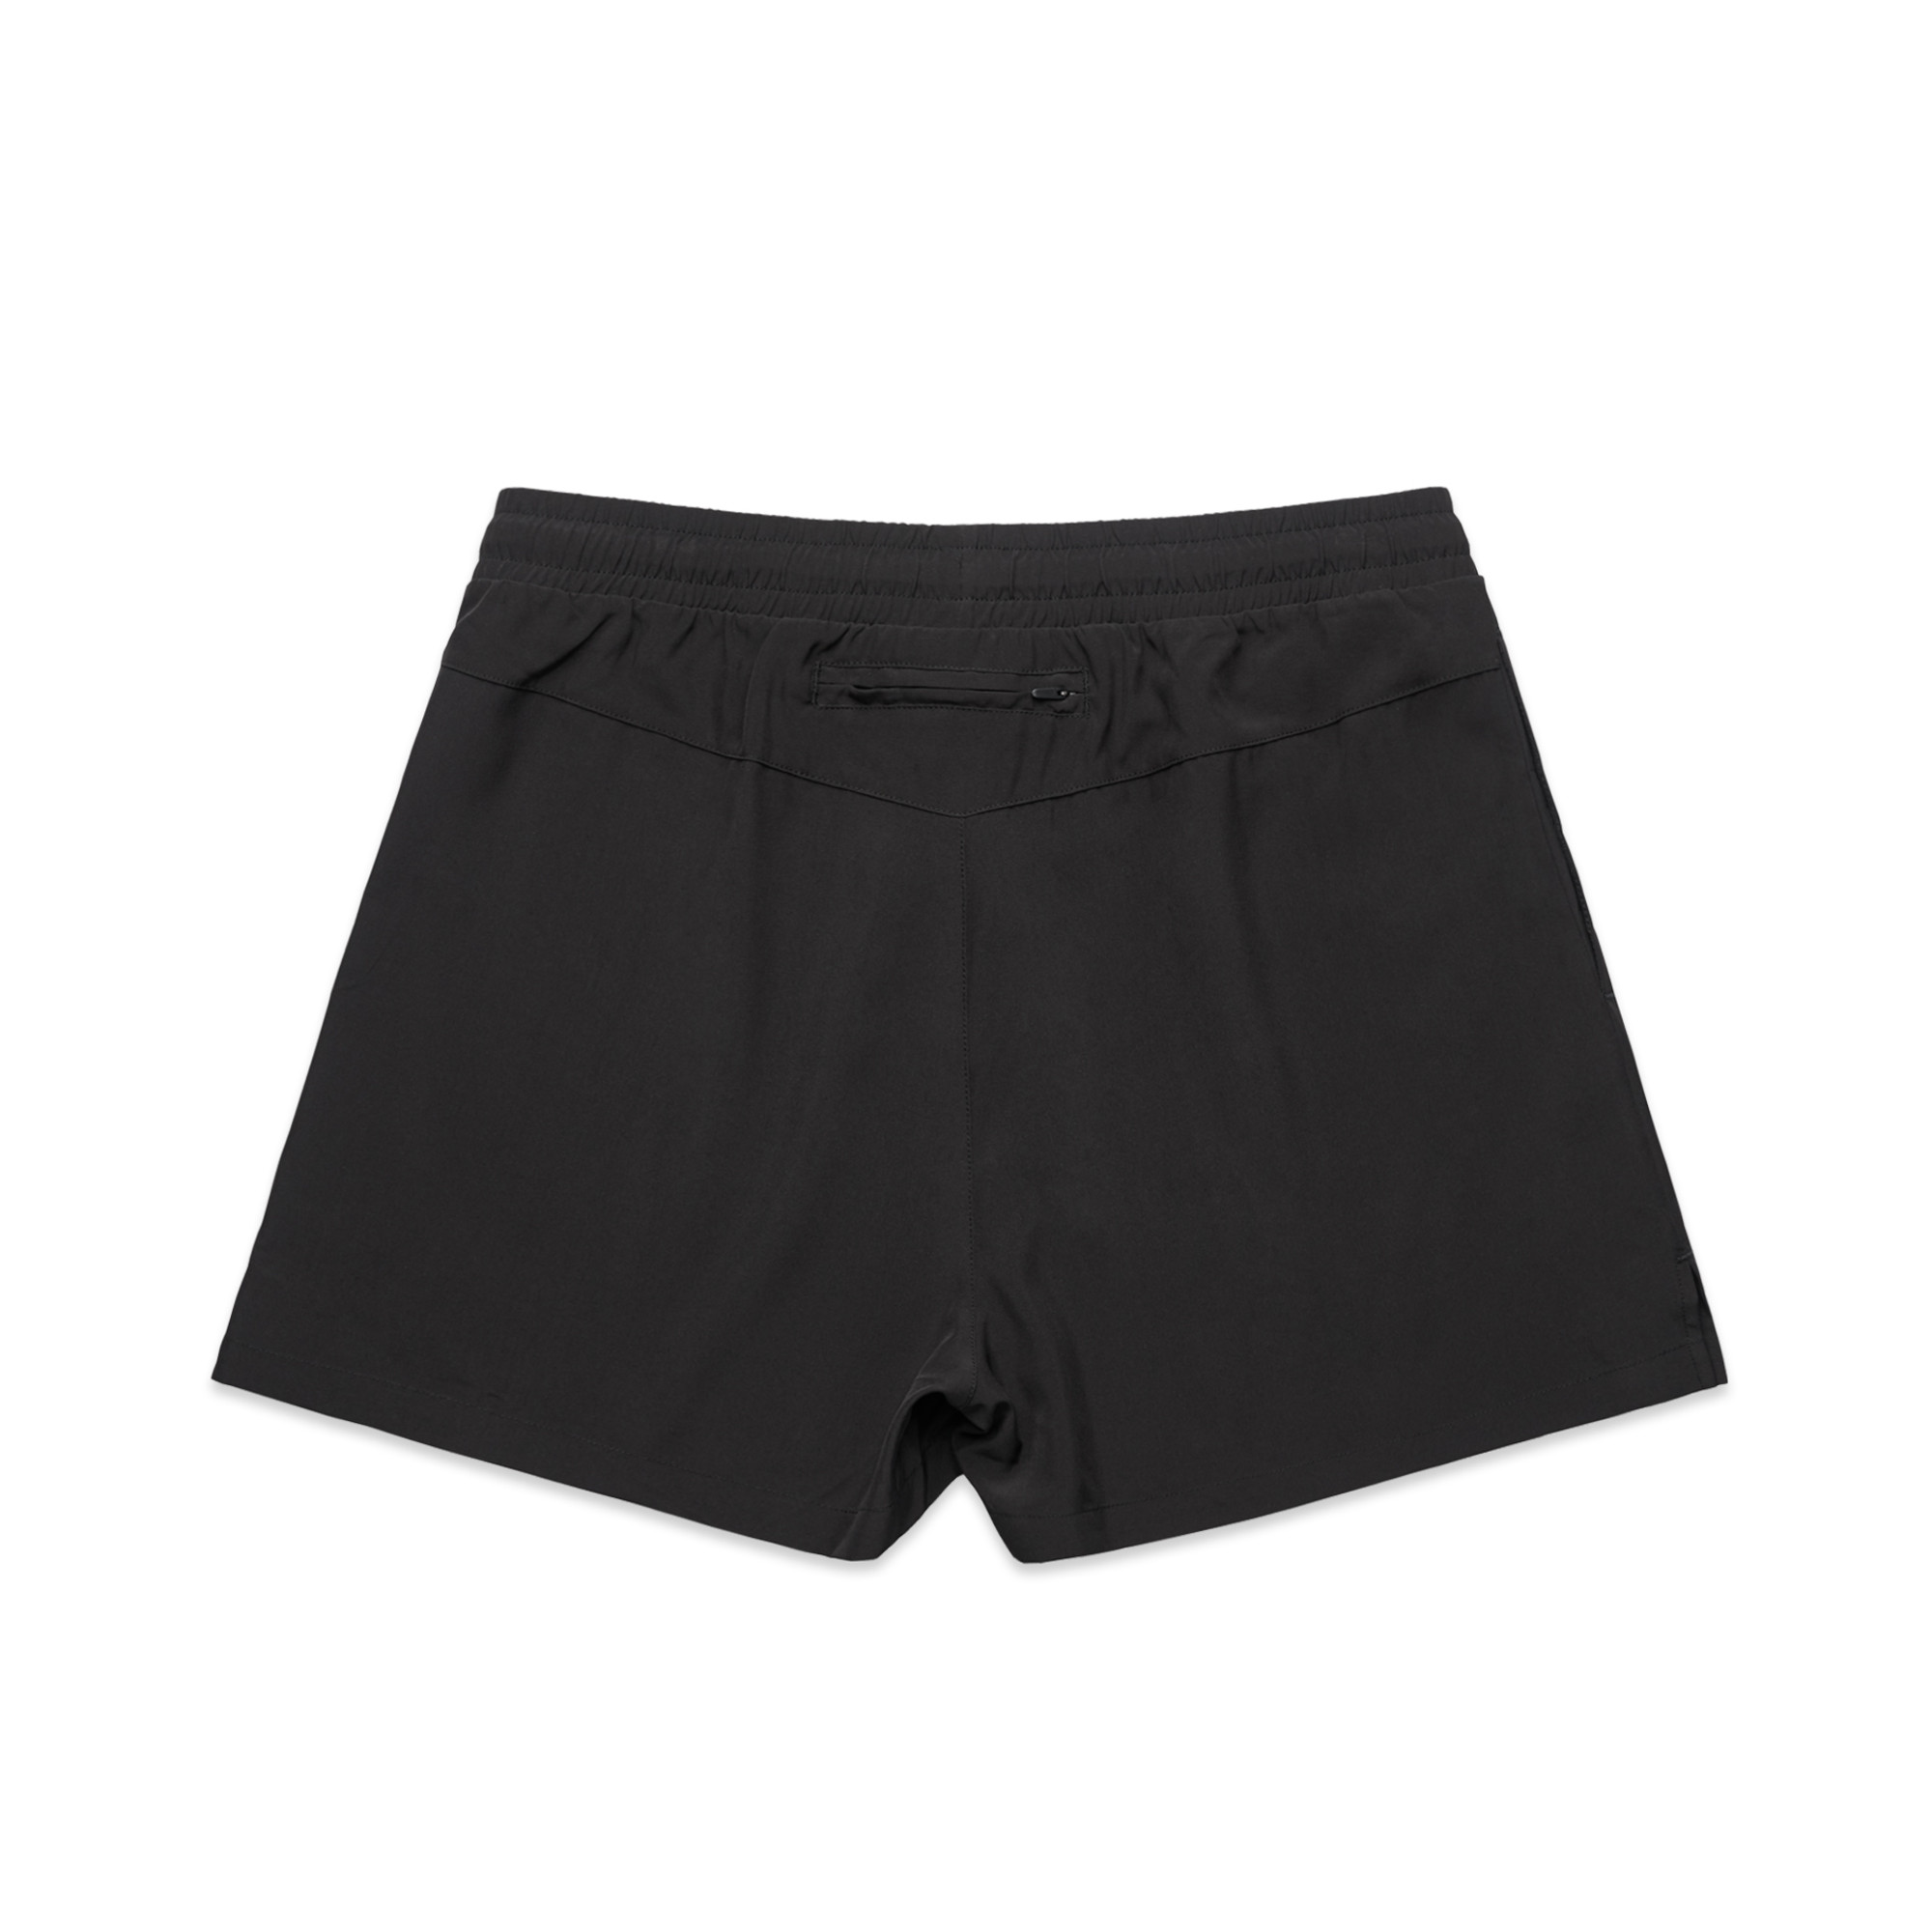 Wo's Active Shorts - 4620 - AS Colour AU